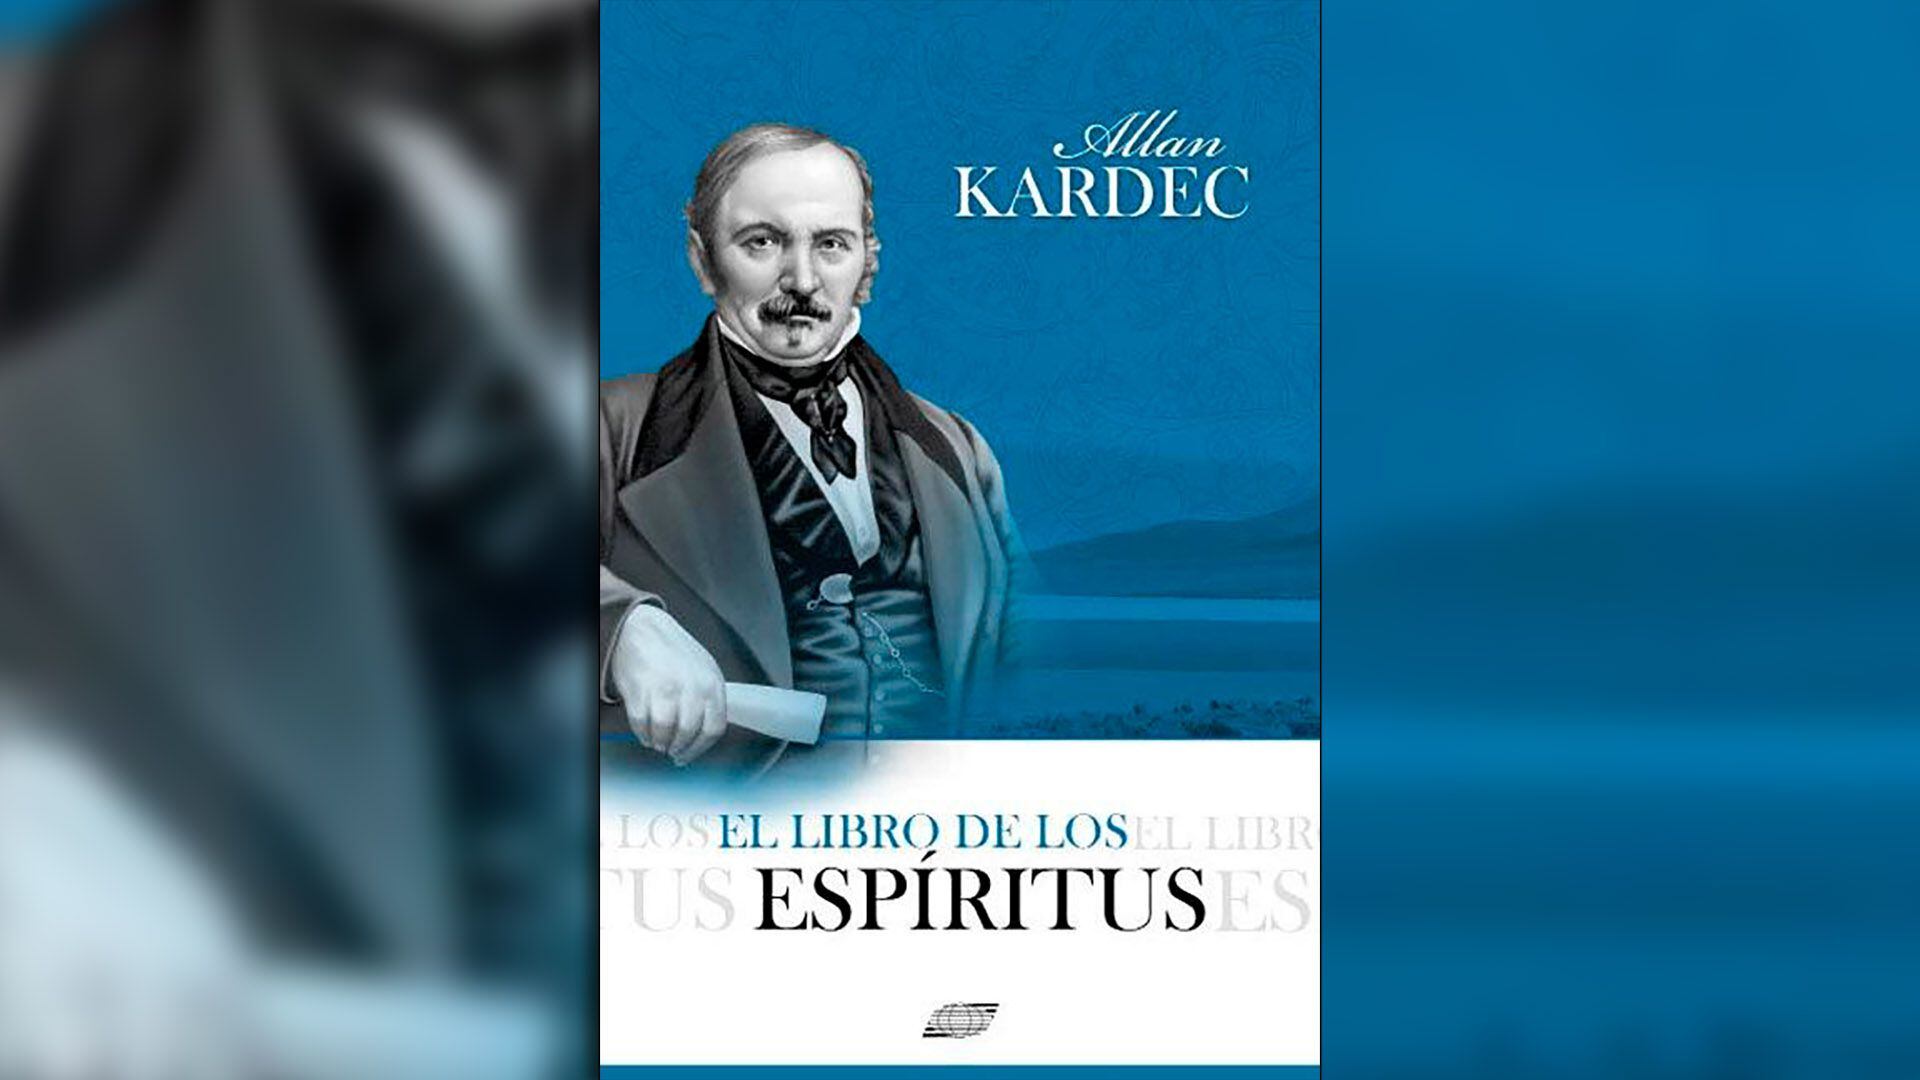 "EL libro de los espíritus", la obra de Kardec que todavía sigue siendo un éxito de ventas, 162 años después de su publicación (fotomontaje)